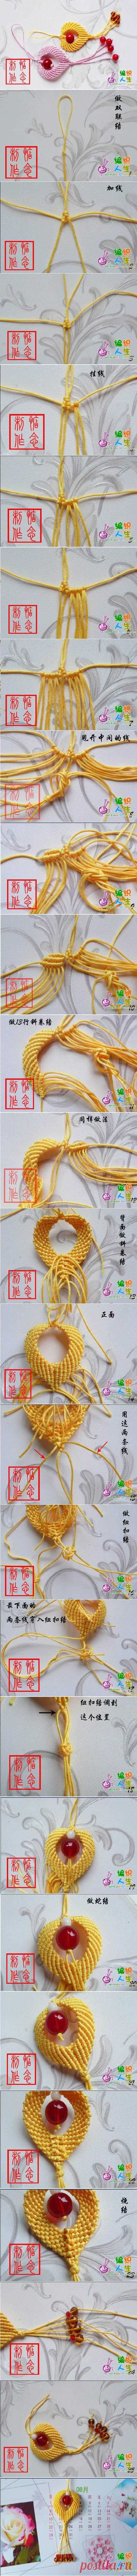 (11) DIY Chinese Knot Heart Ornament | Макраме | Орнамент С Сердцами, Узел и Китайский